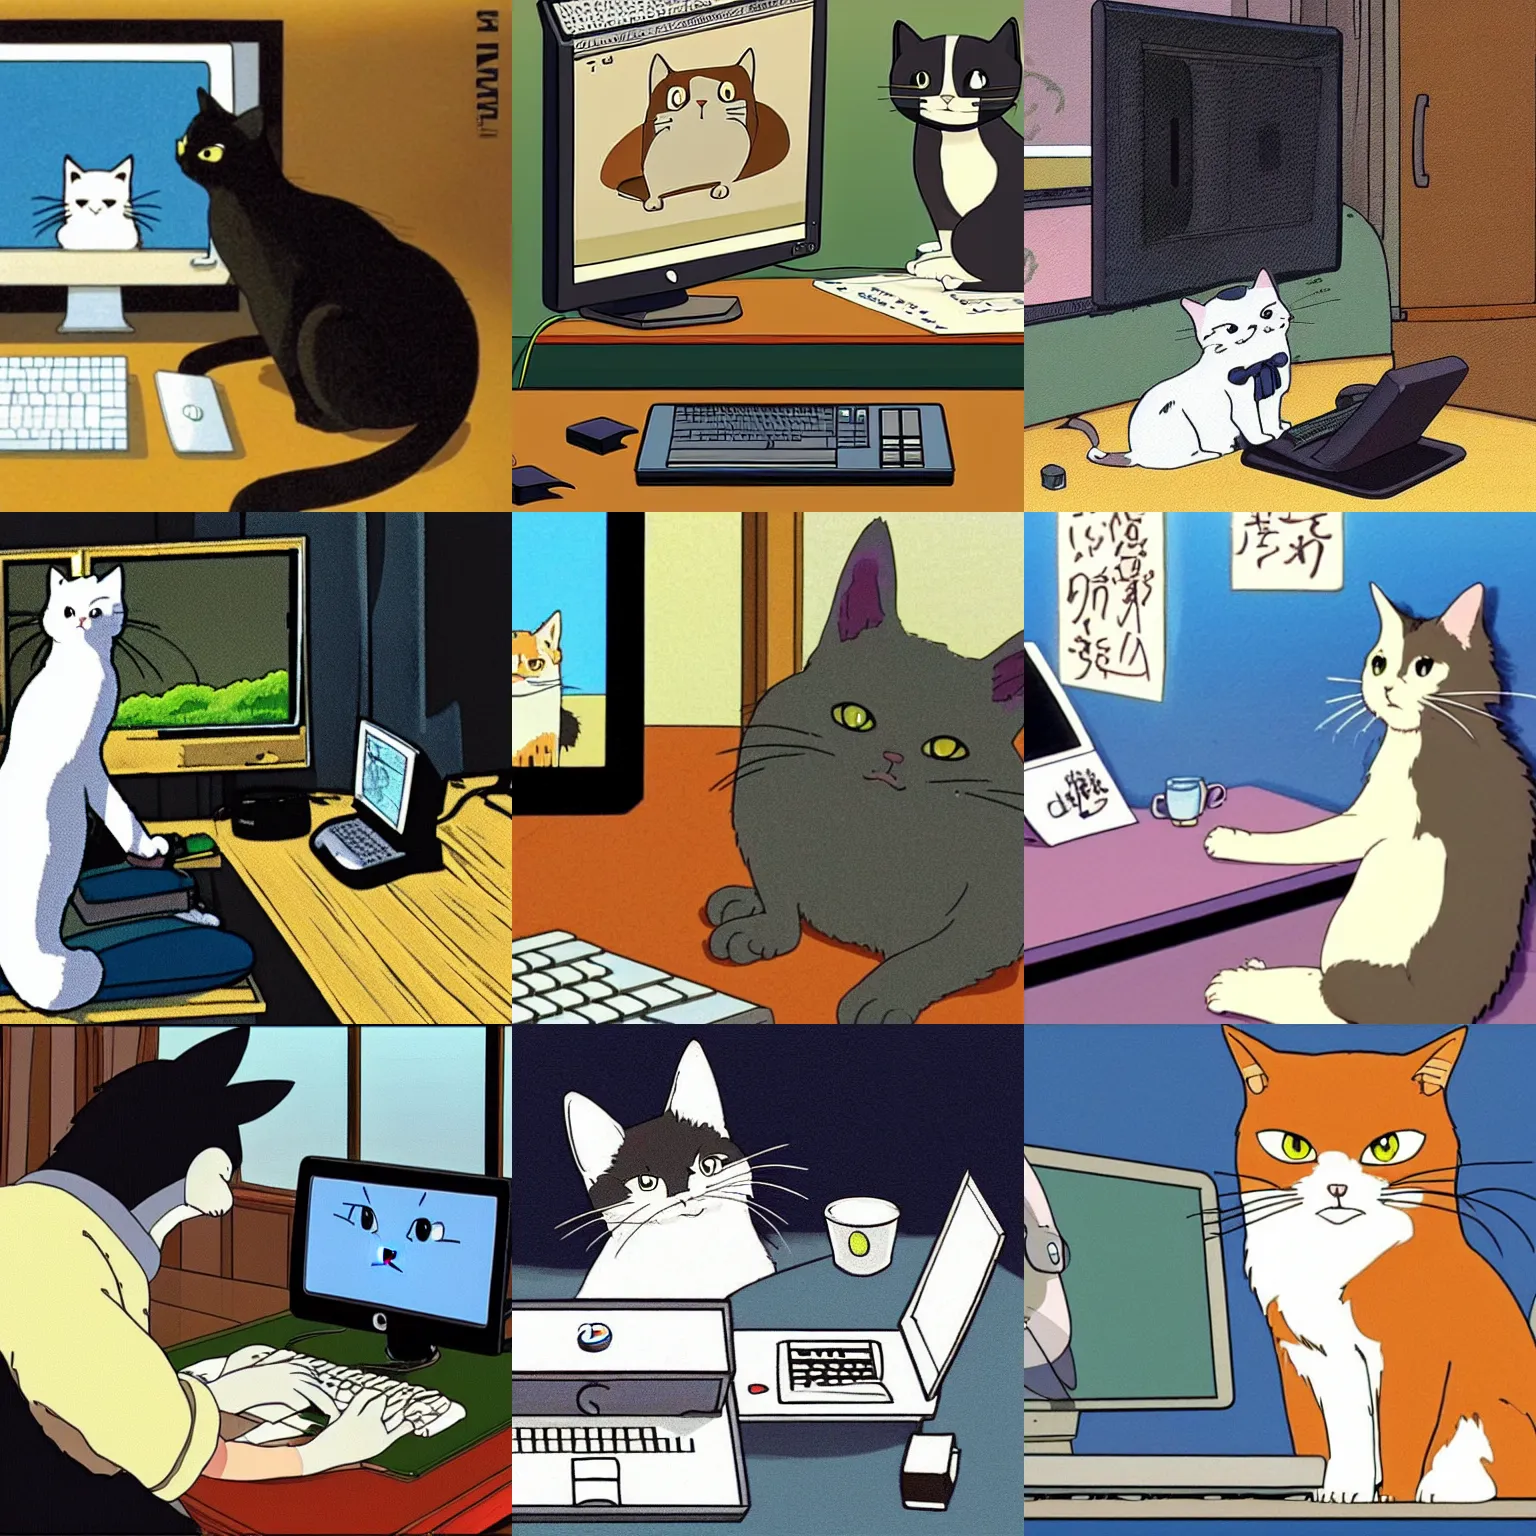 Prompt: a cat sitting at a desktop computer, studio ghibli